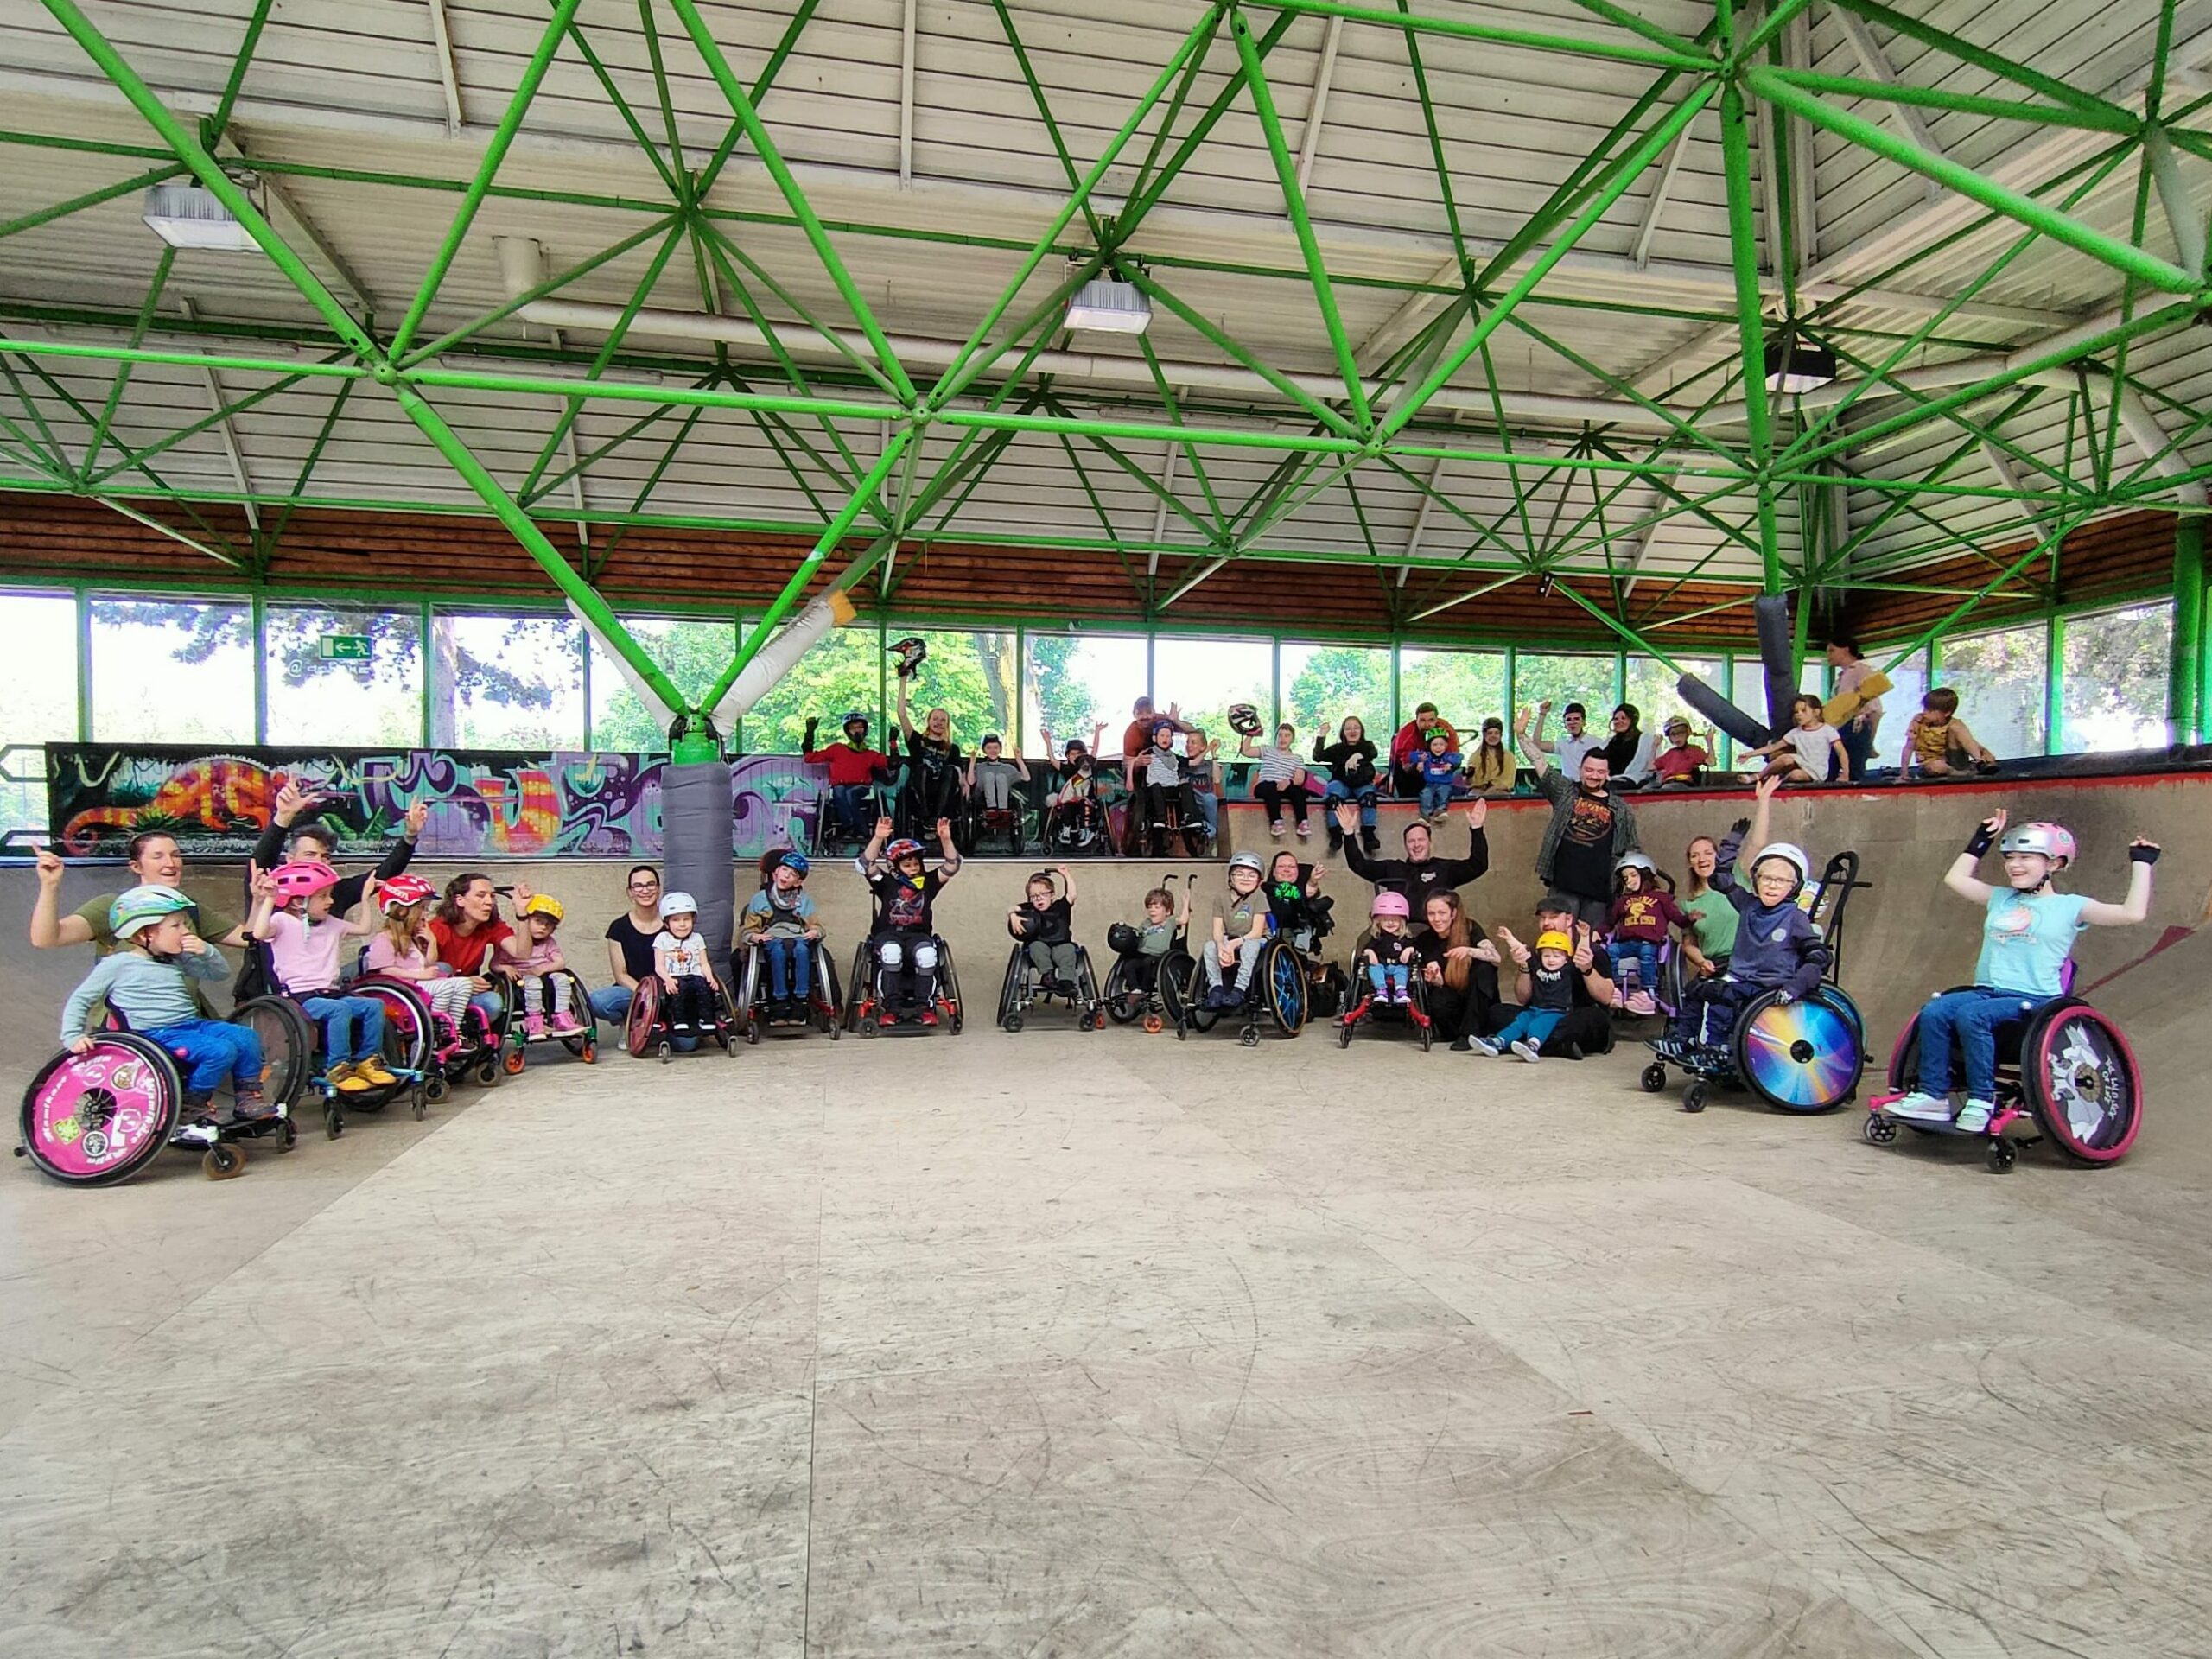 Eine Gruppe von Kindern und Jugendlichem im Rollstuhl in einer Skatehalle. Sie stehen für ein Gruppenfoto auf und vor einer Rampe.